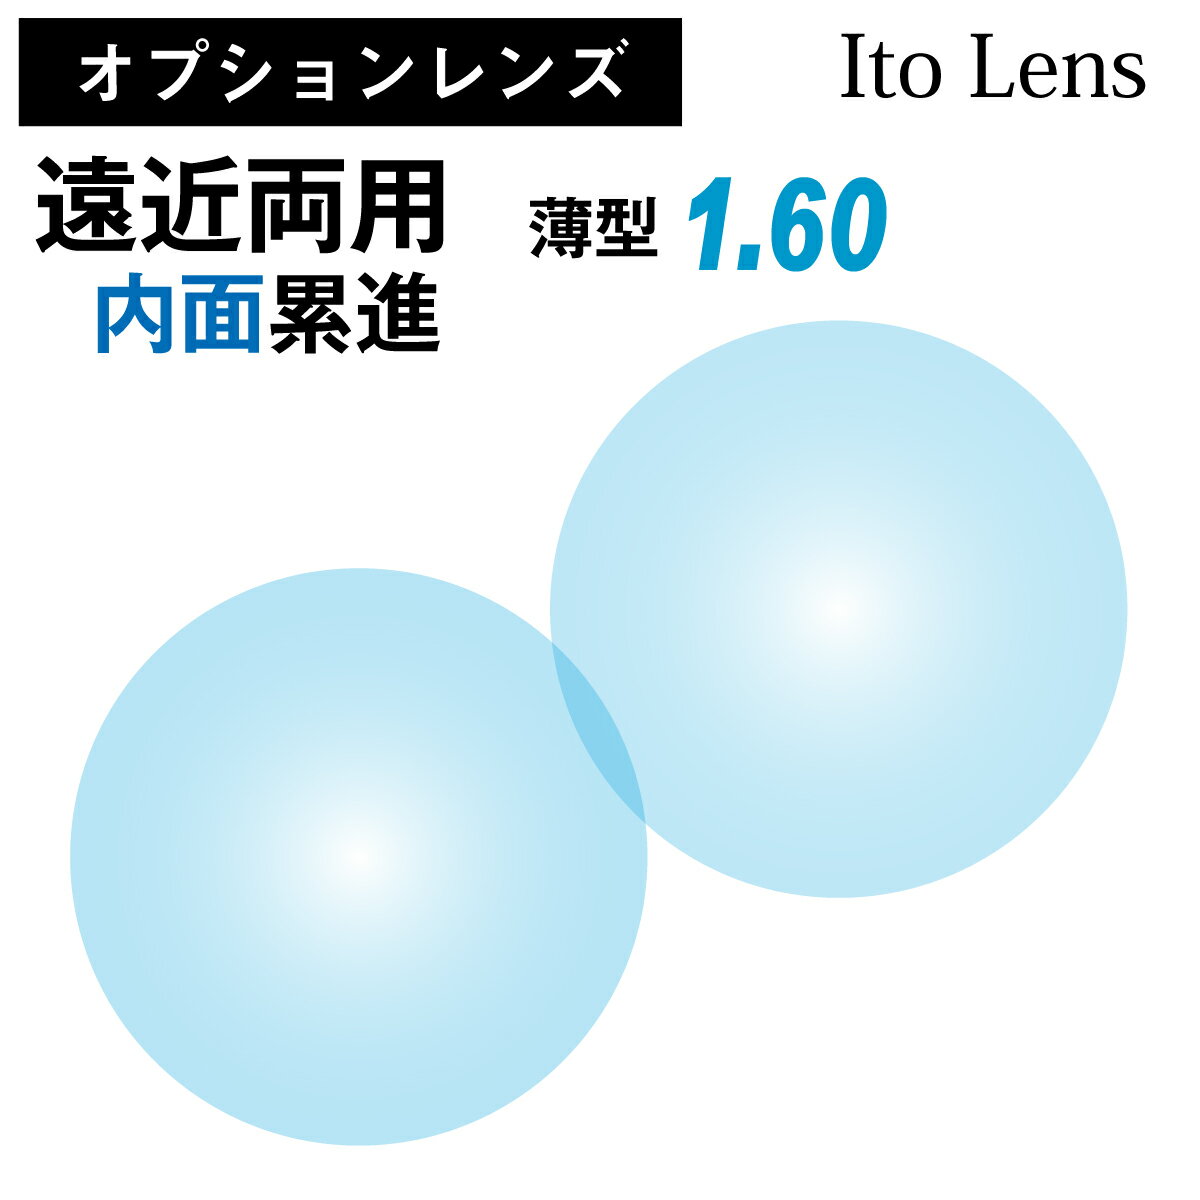  IvVY Cg[Y ߗp ʗݐi Y ^ ܗ 1.60 {  21g  Ito Lens Kl ዾ ڂȂ UVJbg OJbg op-ito